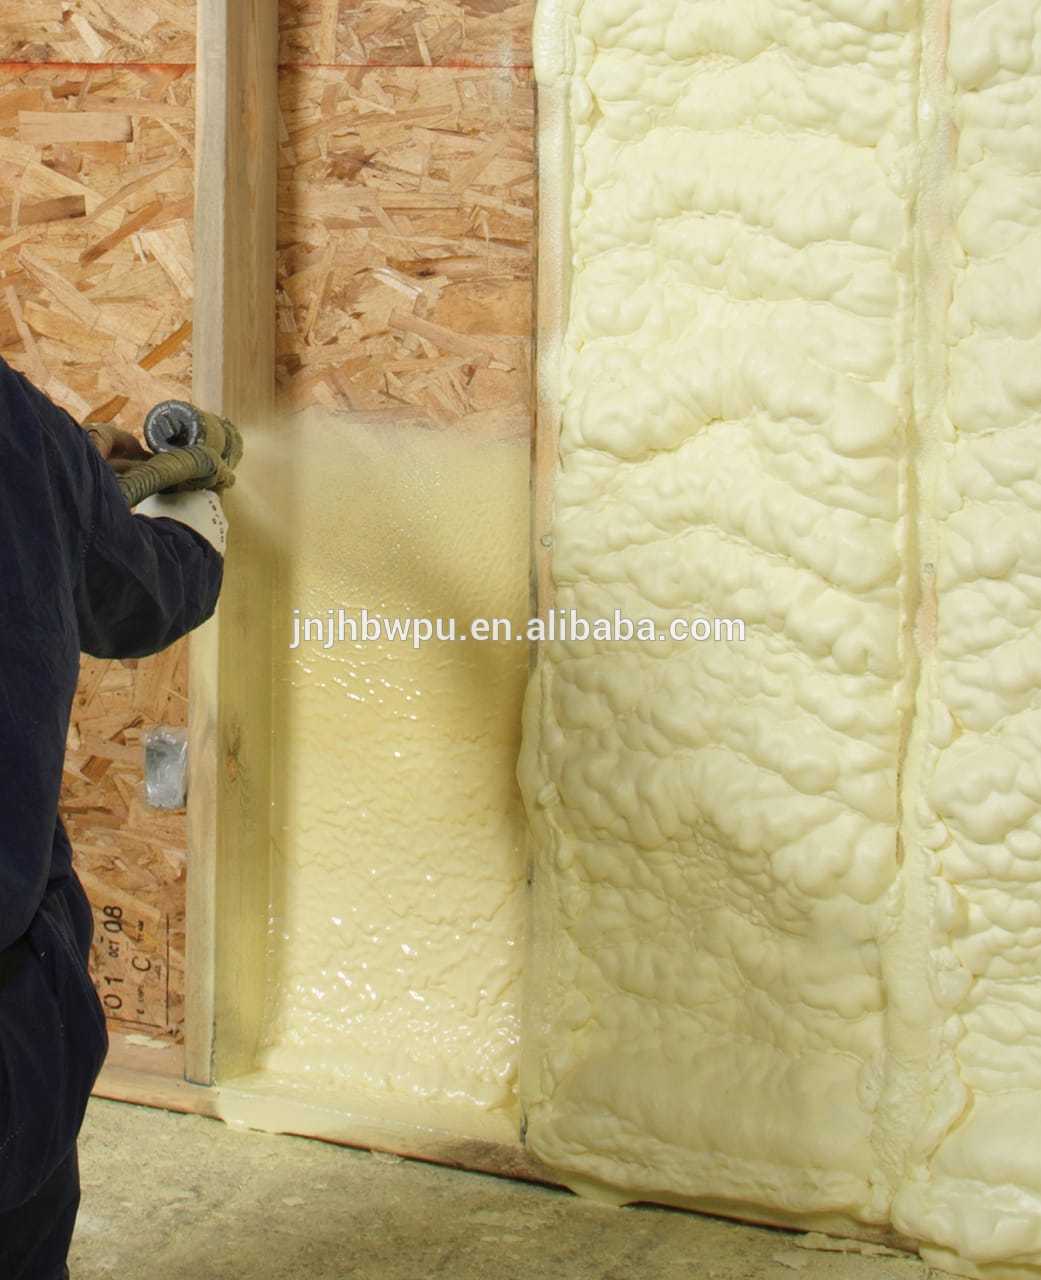 Пена для утепления стен: монтажный утеплитель в баллонах, полиуретановые варианты для крыши и фасада дома, инструкции по нанесению